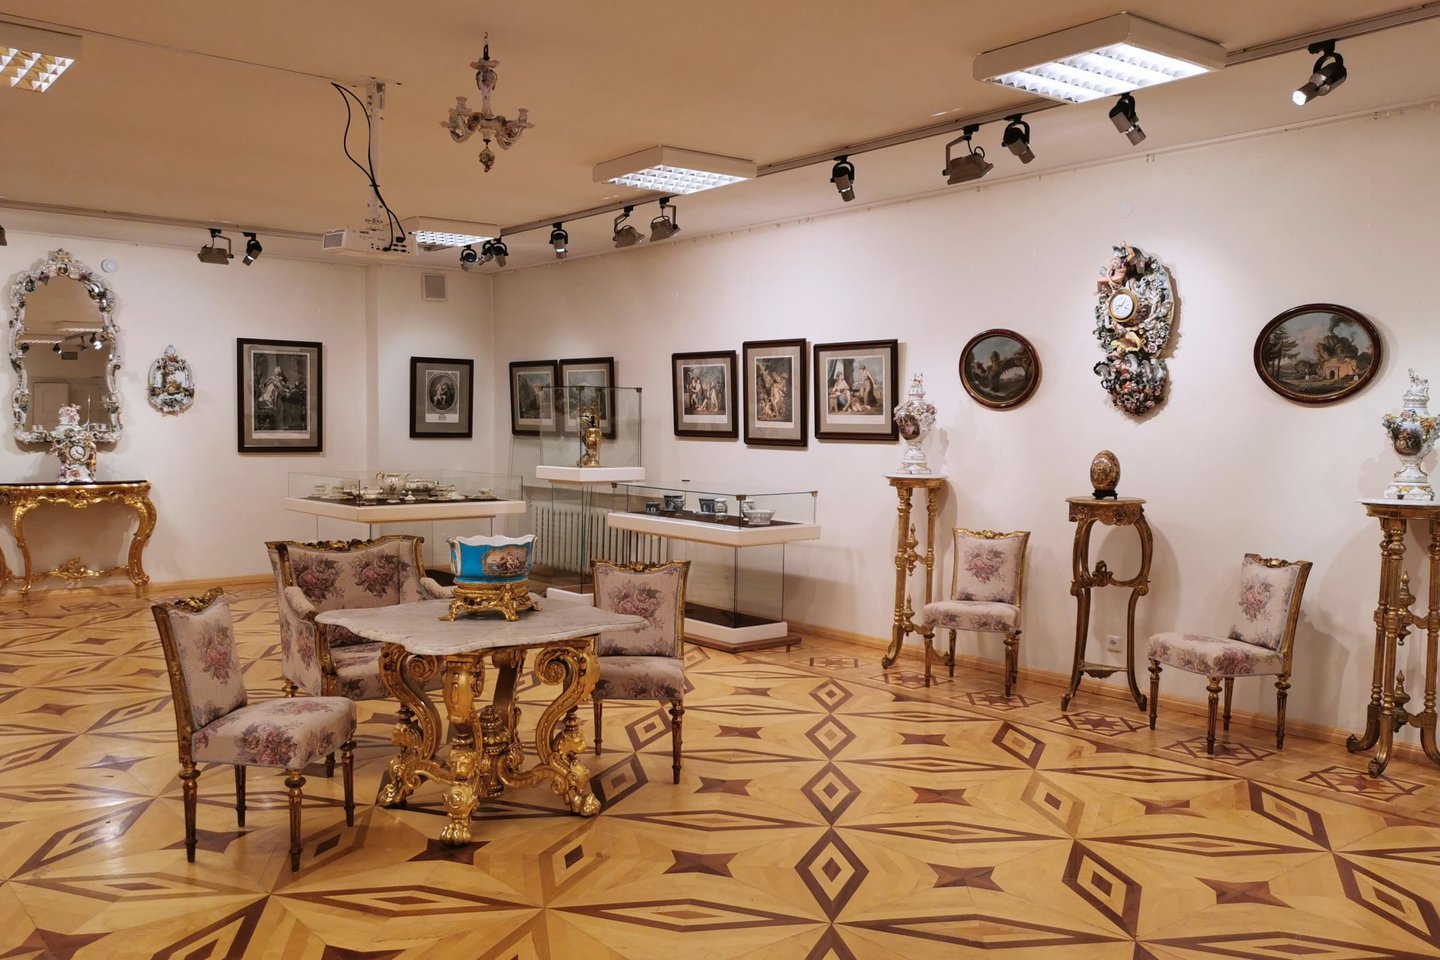 Greta porceliano dirbinių eksponuojami LNDM grafikos ir tapybos XVII–XIX a. kūriniai bei manieringi baldų komplektai paryškina dailės epochų bendrą vaizdą.<br>Laikrodžių muziejaus (E. Rumbutytės-Šimienės) nuotr.